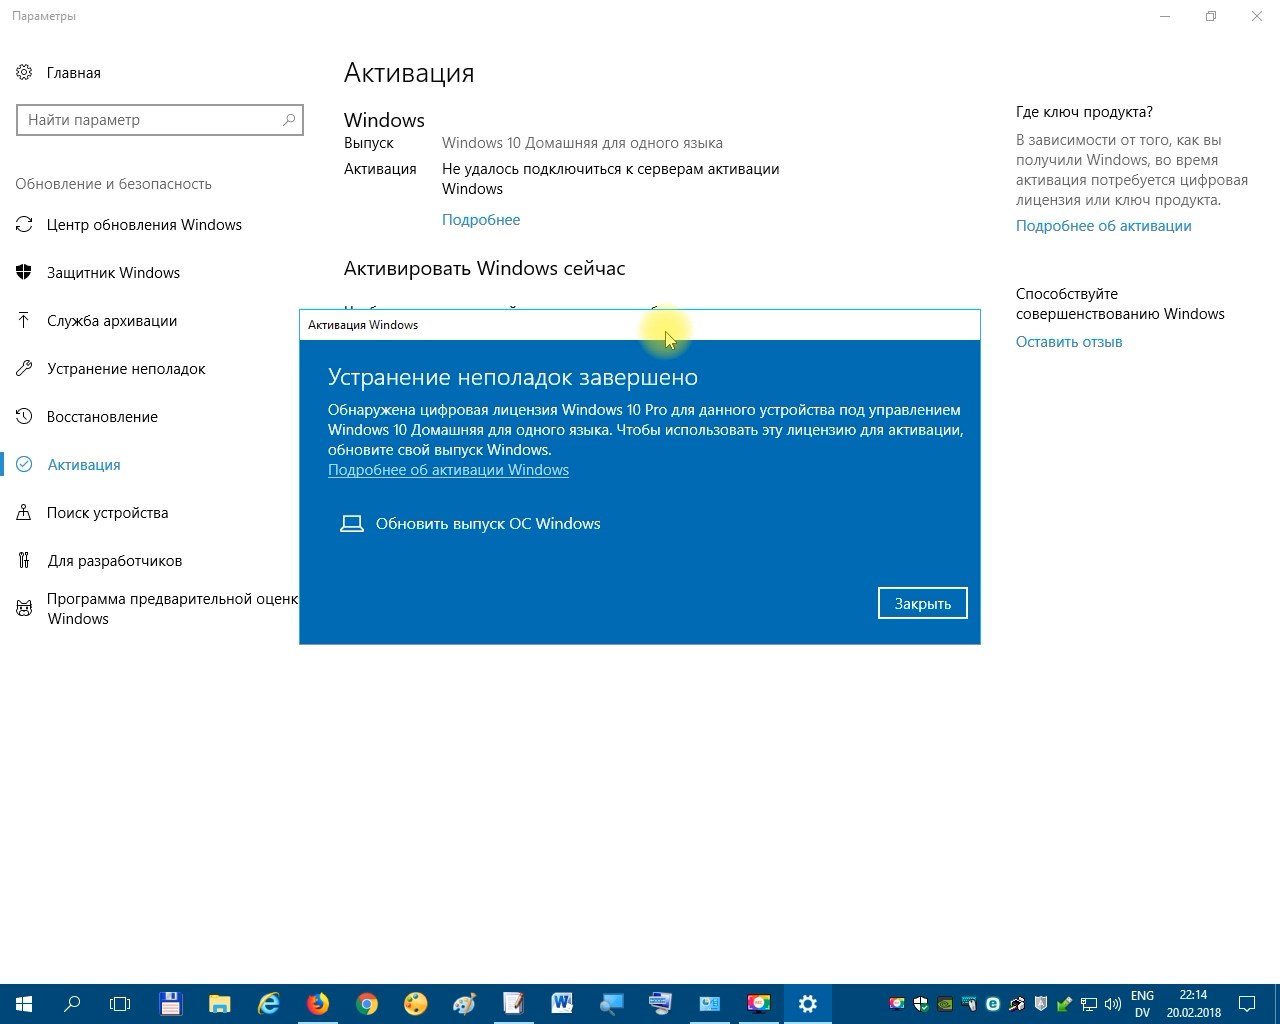 Бесплатная активация windows 7 и 10 без лицензионного ключа и с ключом